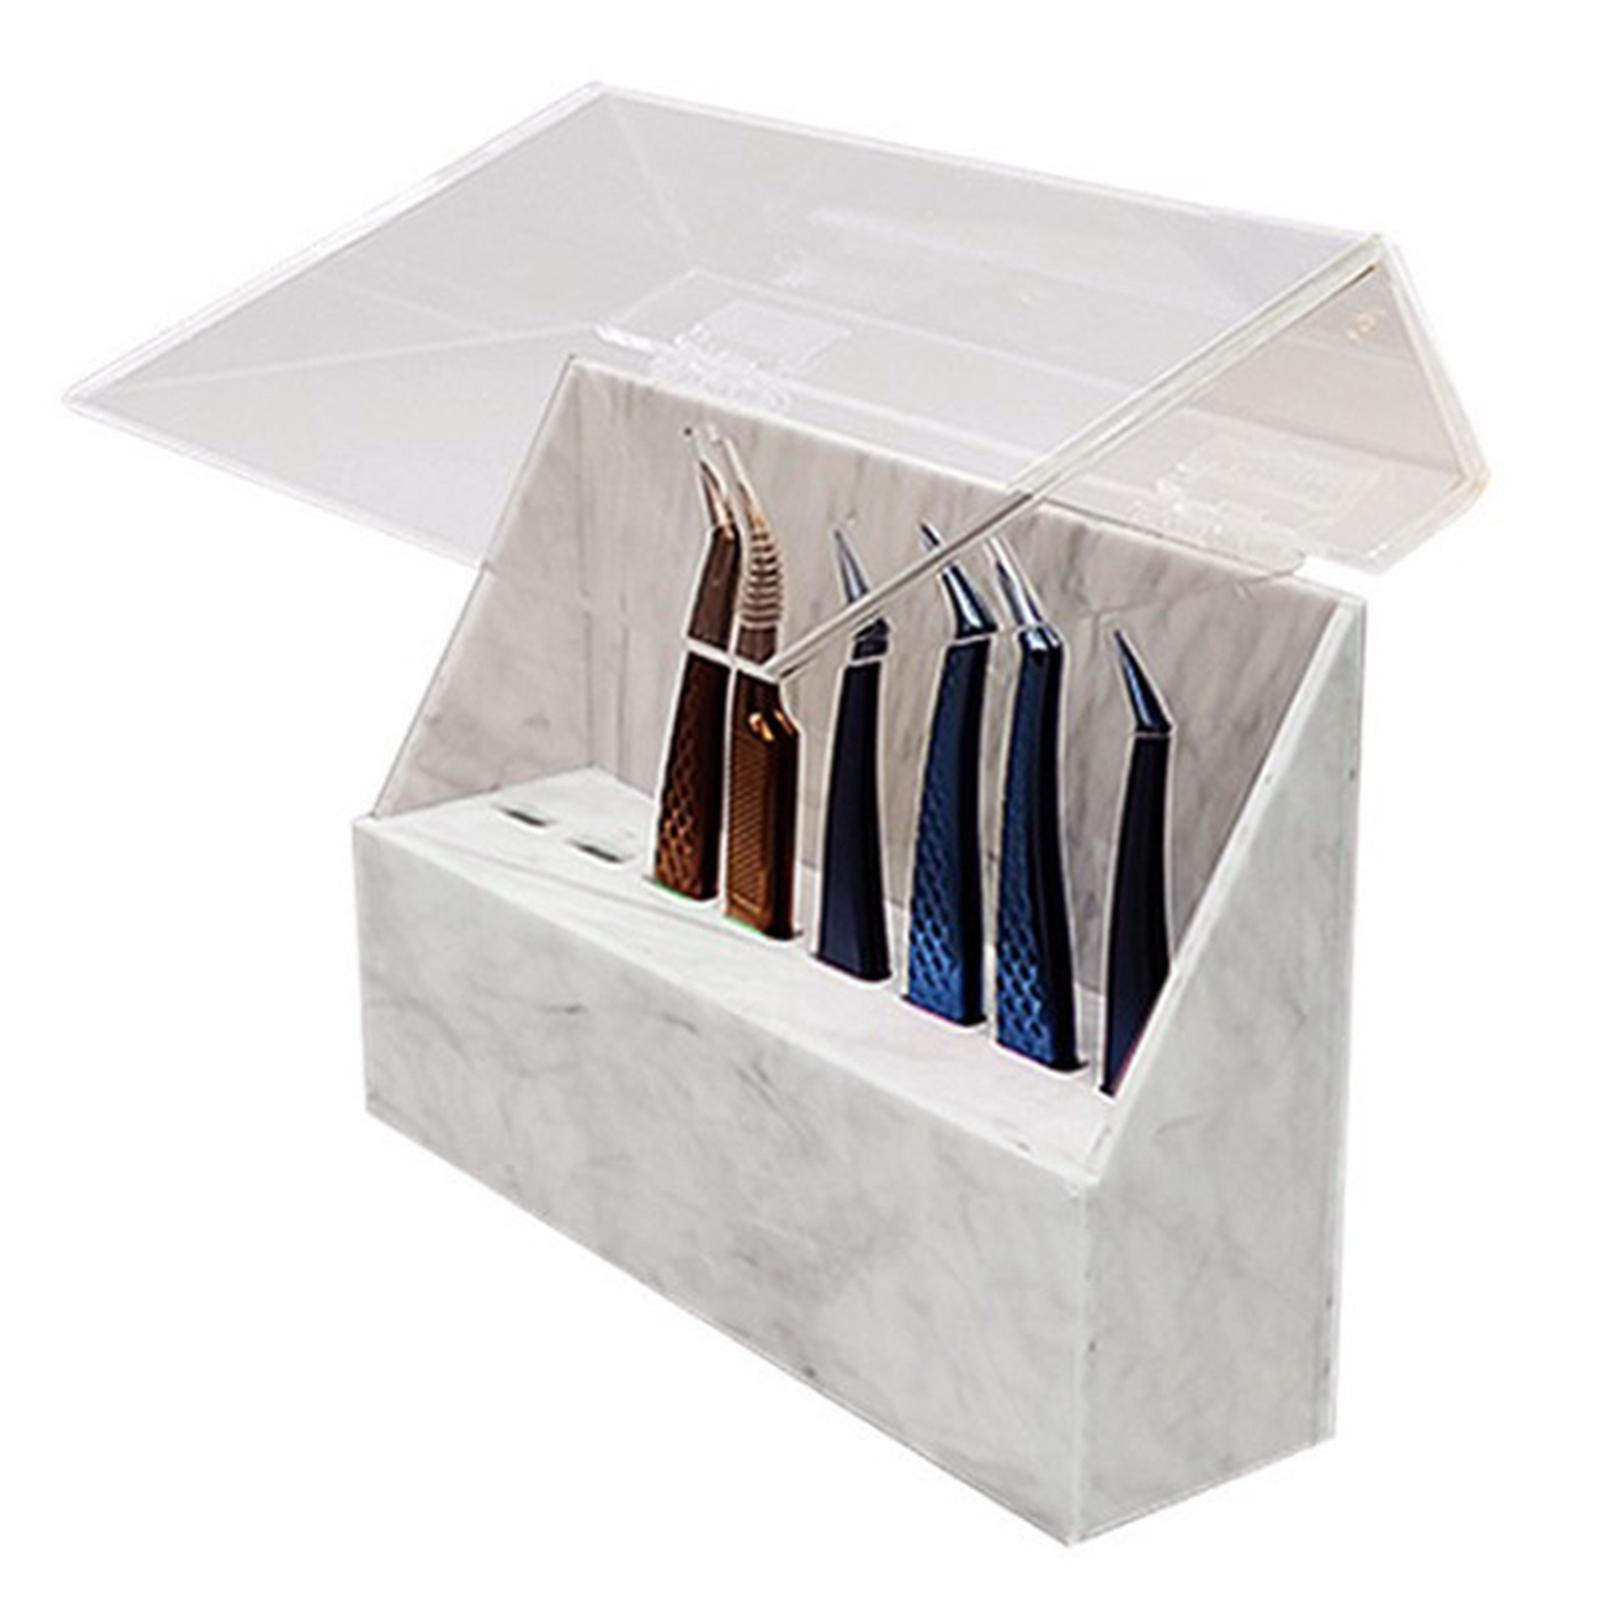 2xEyelash Extension Storage Box Tweezers Organizer Case Stand Holder White